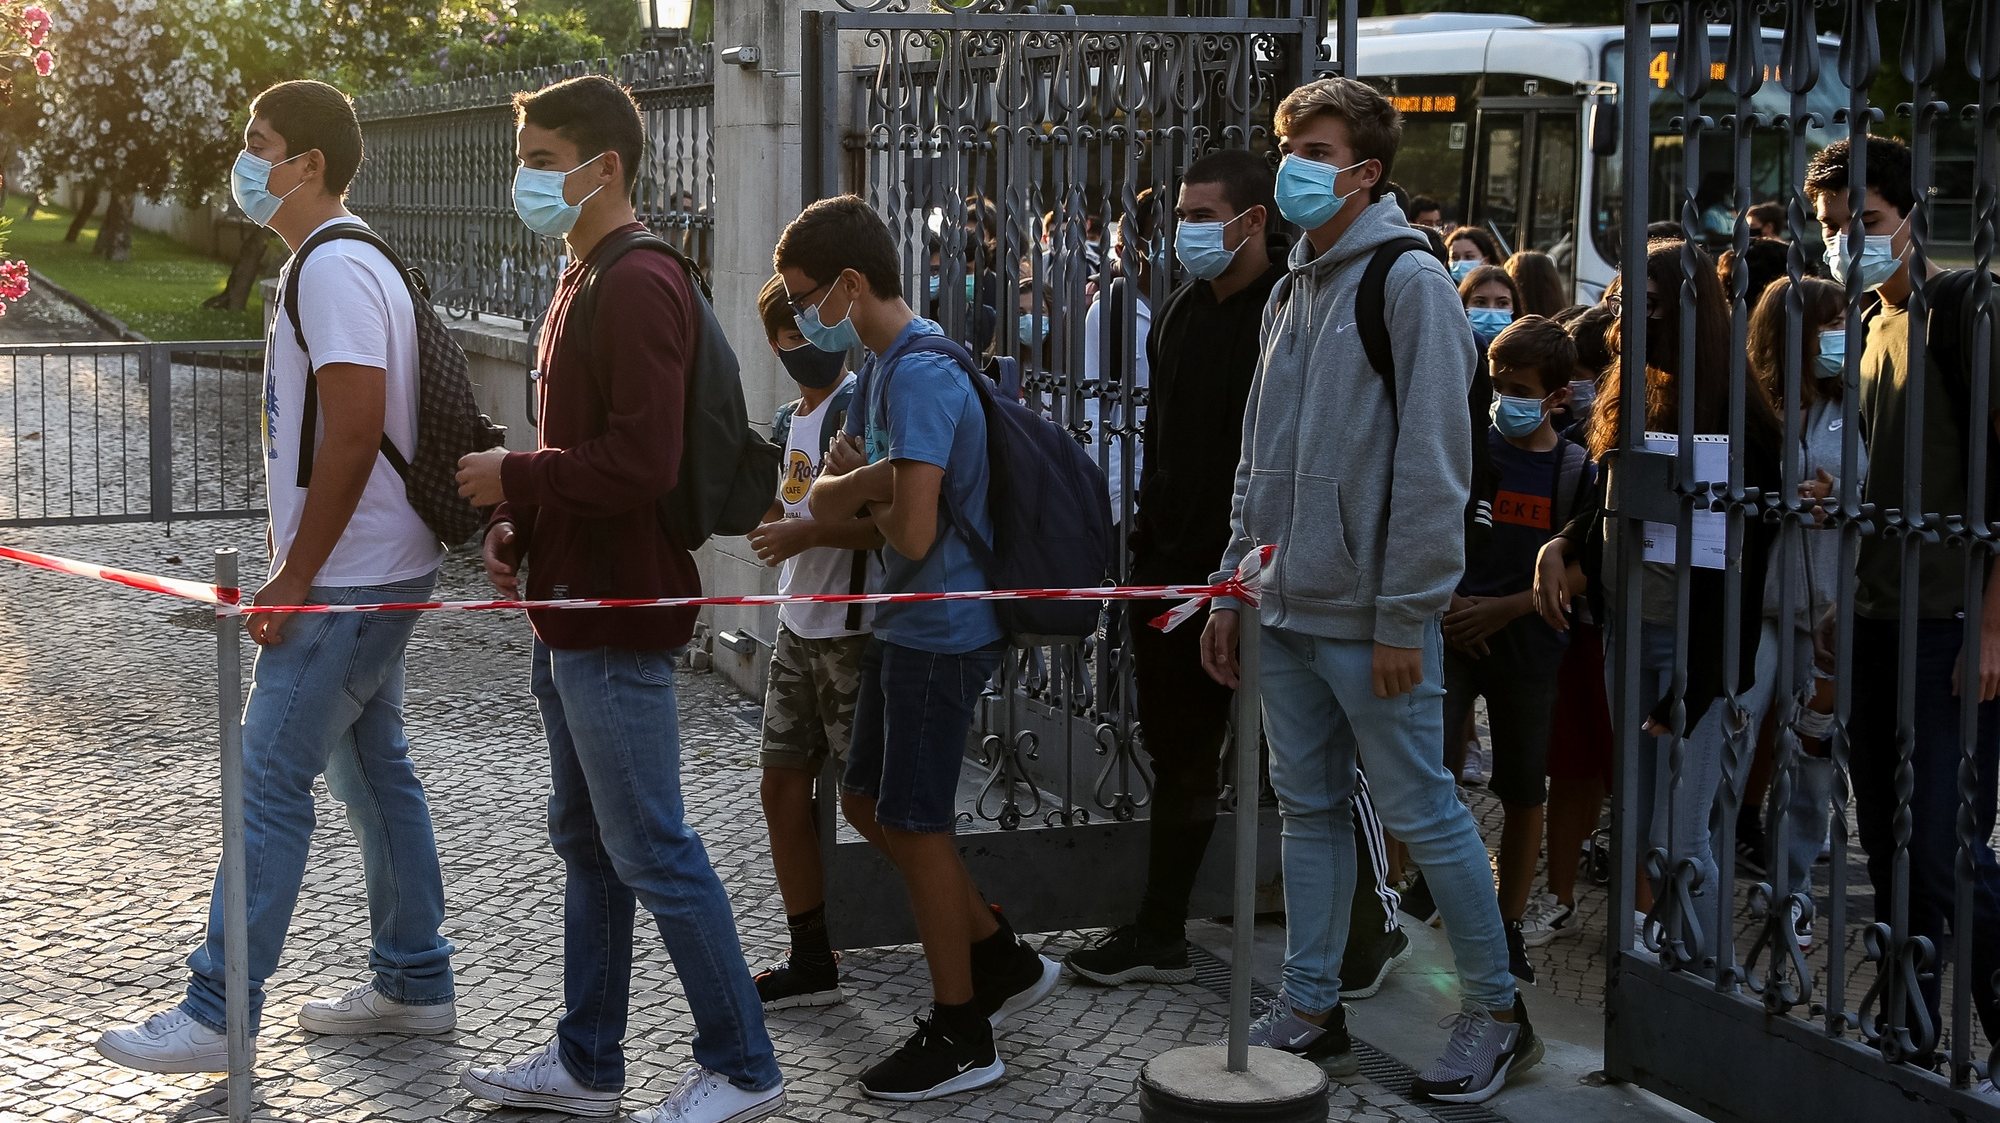 Alunos fazem fila à porta da Escola Secundária Infanta Dona Maria, no dia que assinala o regresso às aulas, com as regras no contexto de pandemia da Covid-19, em Coimbra, 17 de setembro de 2020. PAULO NOVAIS/LUSA